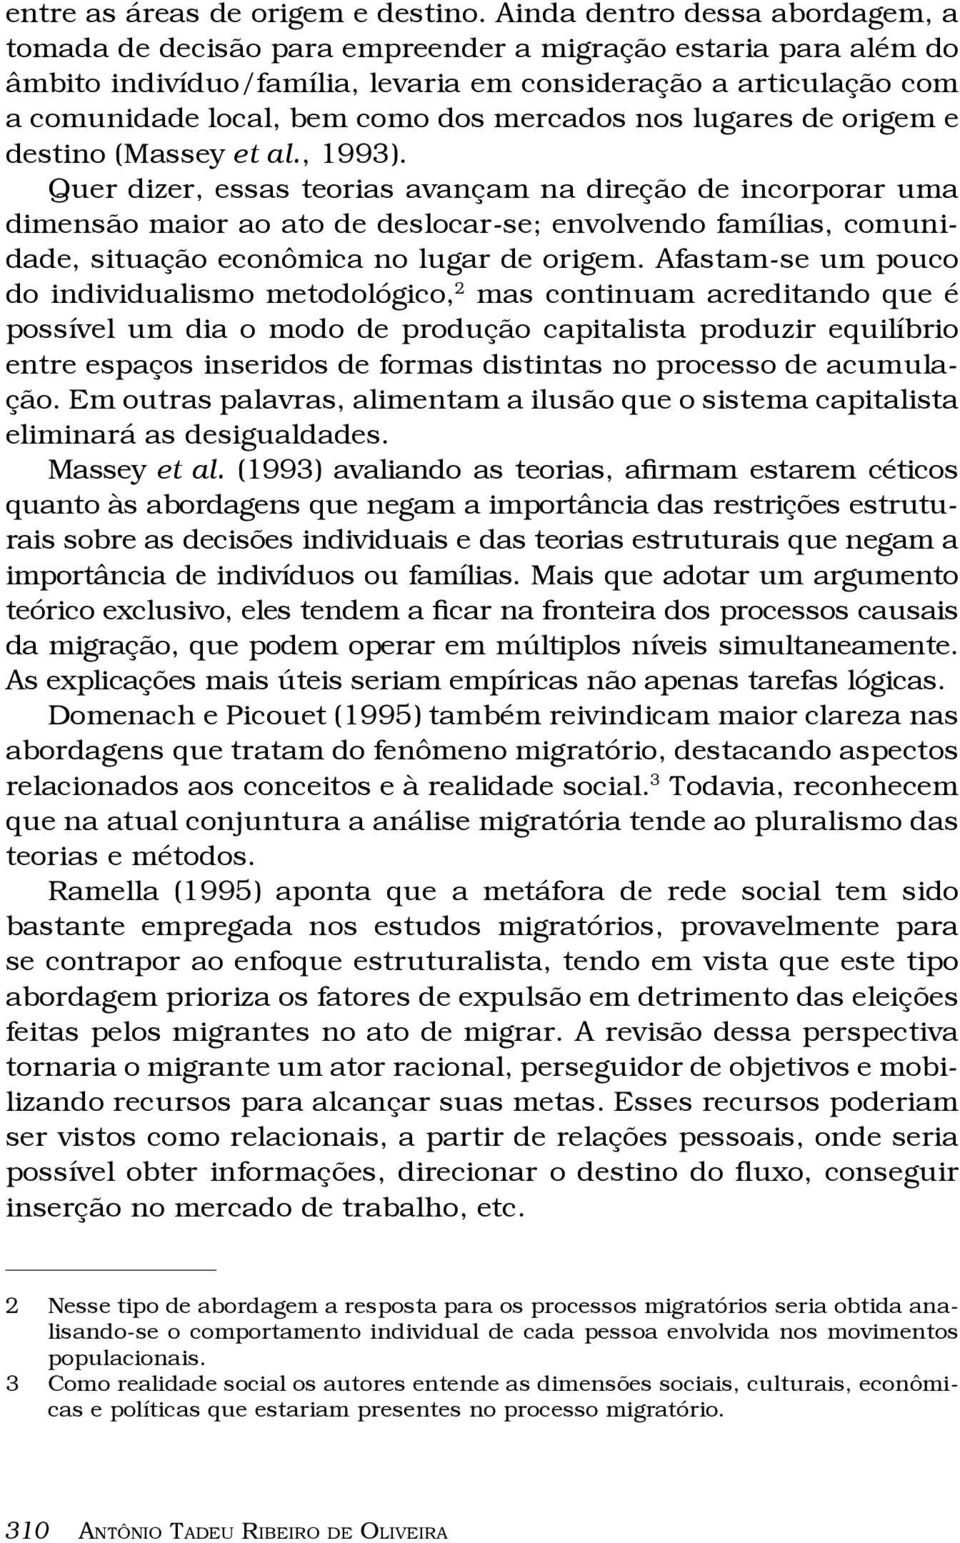 mercados nos lugares de origem e destino (Massey et al., 1993).